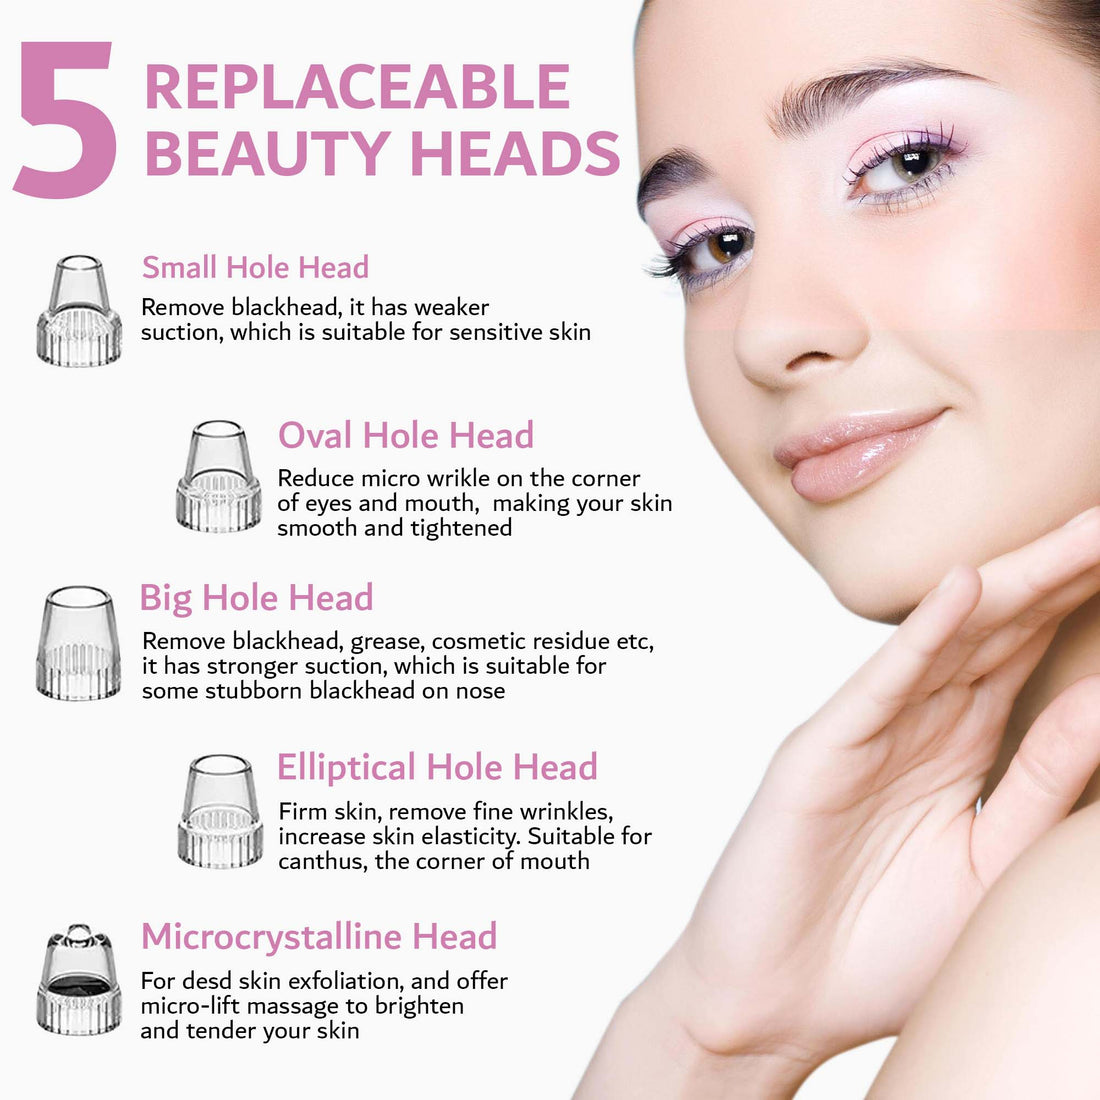 &quot;Clear Pores, Radiant Skin: Beautepam-Enhanced Blackhead Vacuum